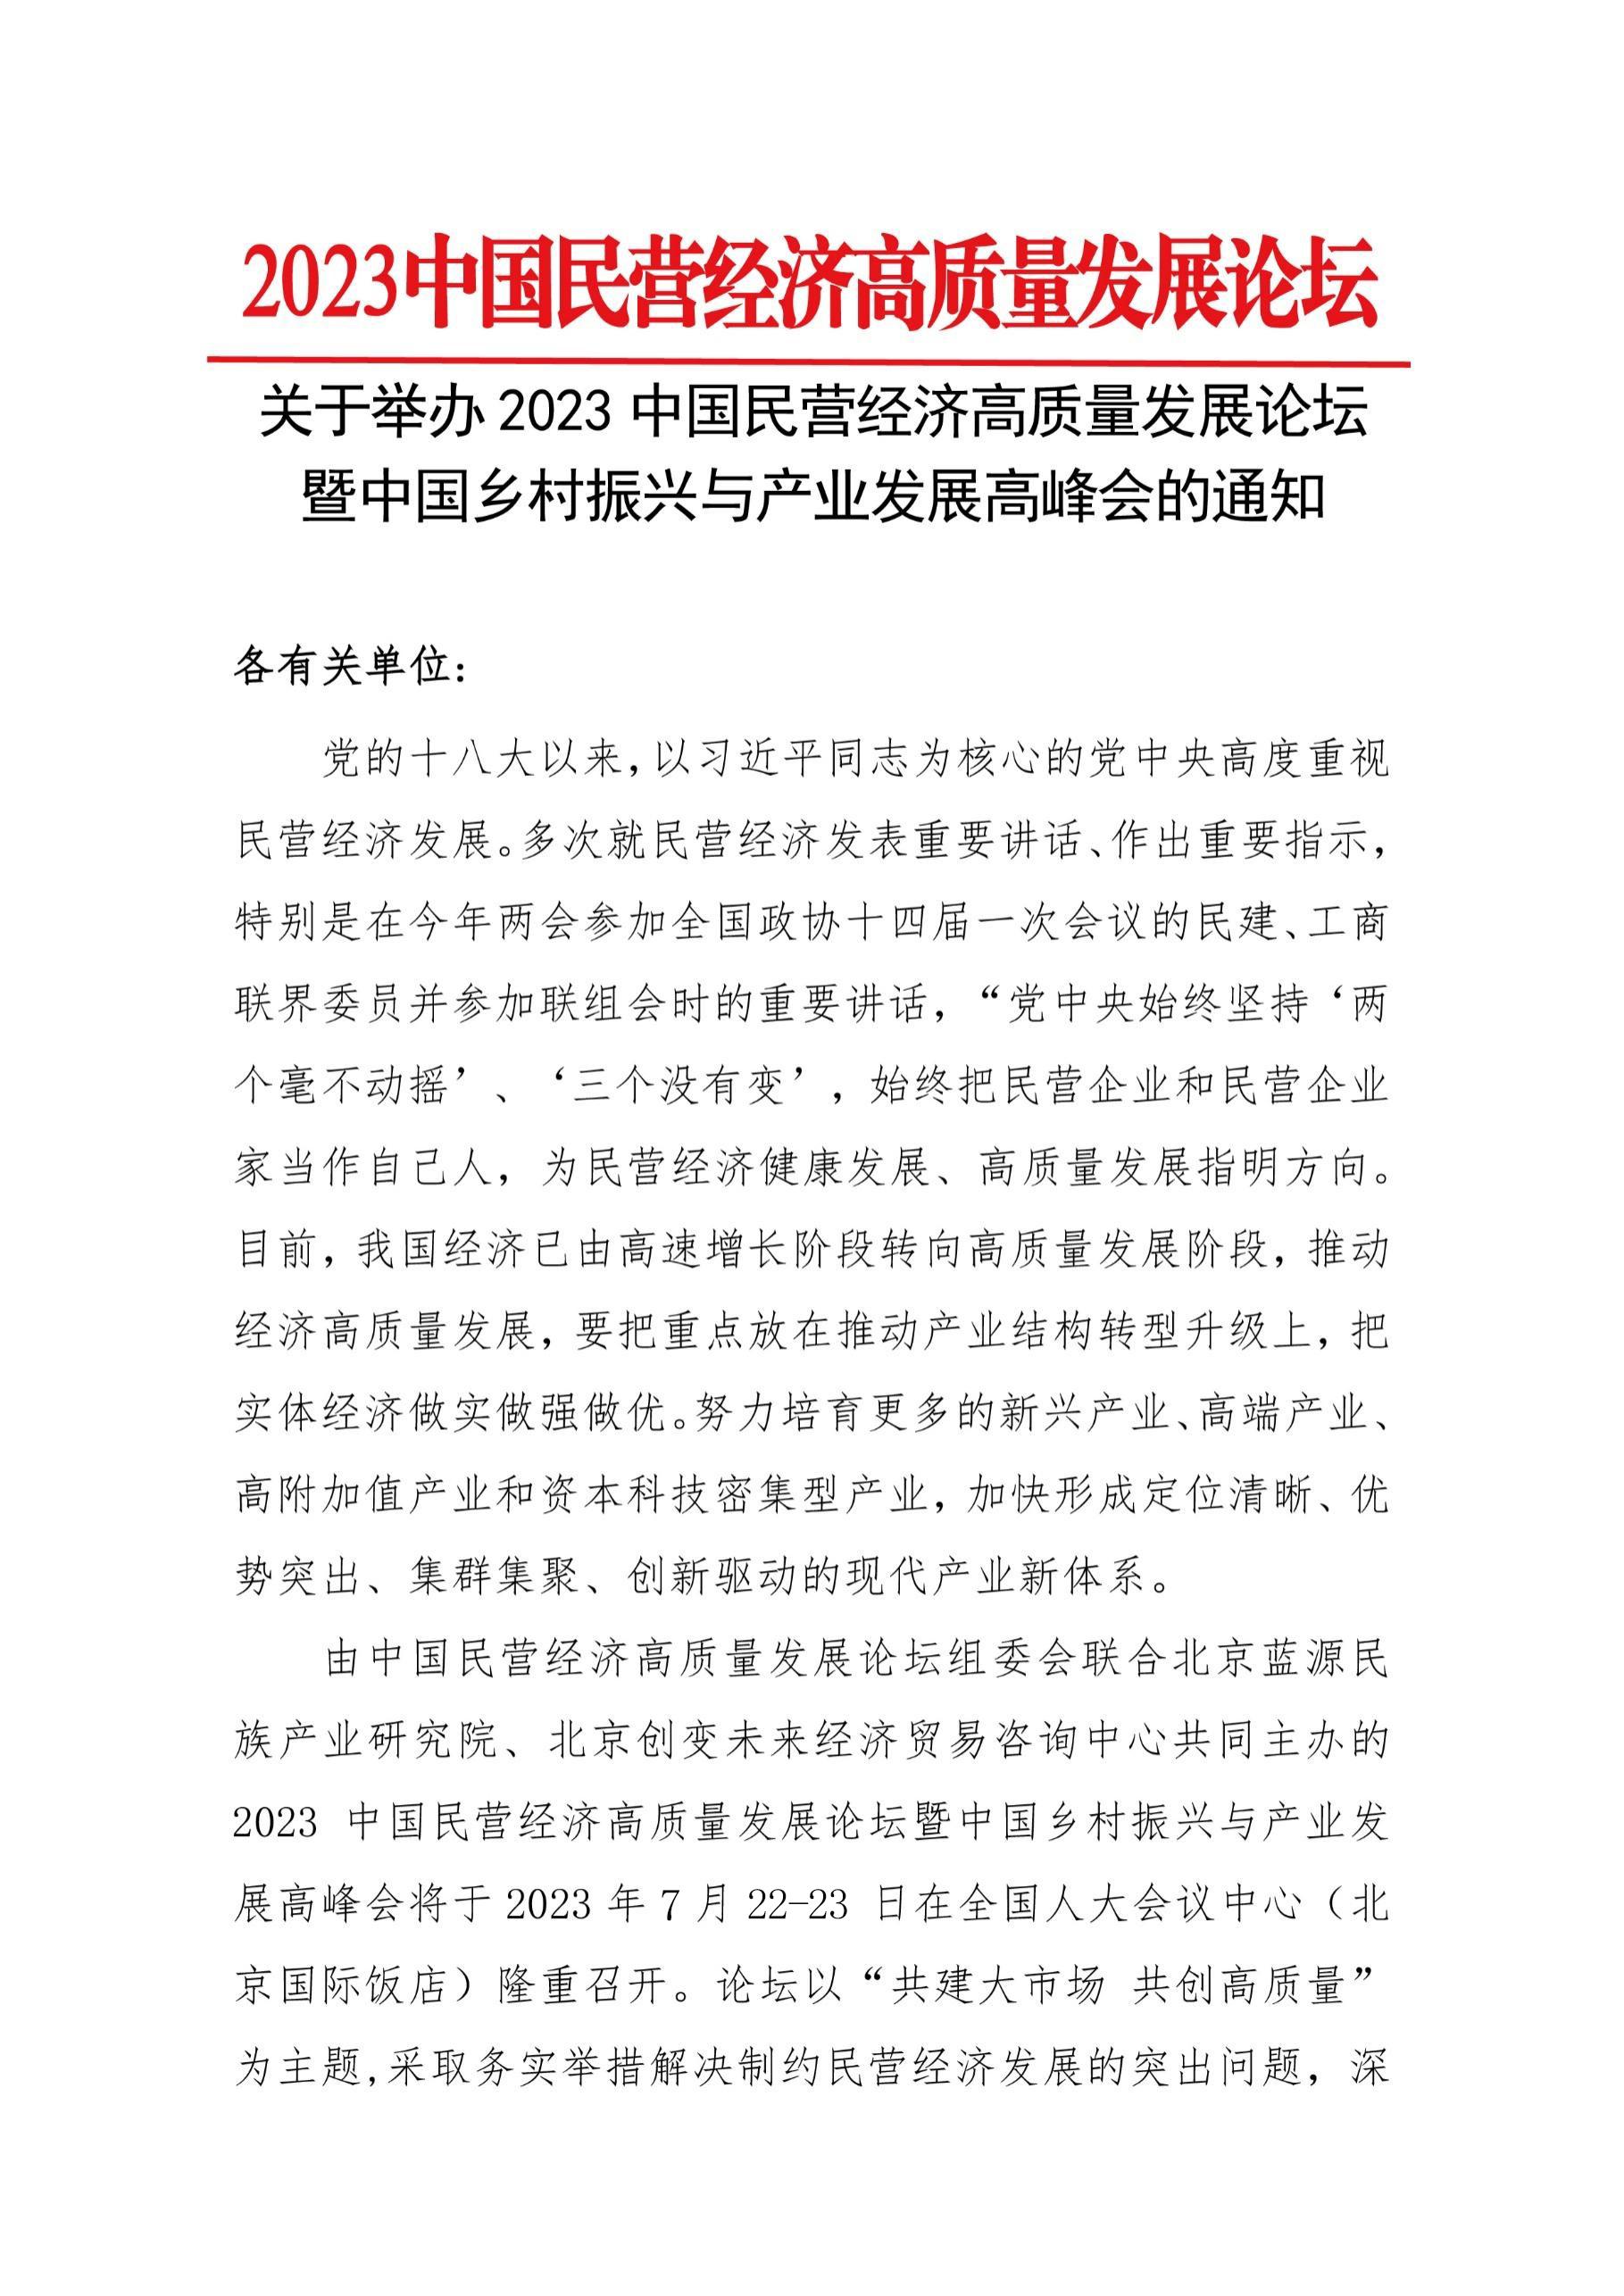 关于举办“2023中国民营经济高质量发展论坛暨中国乡村振兴与产业发展高峰会”的通知